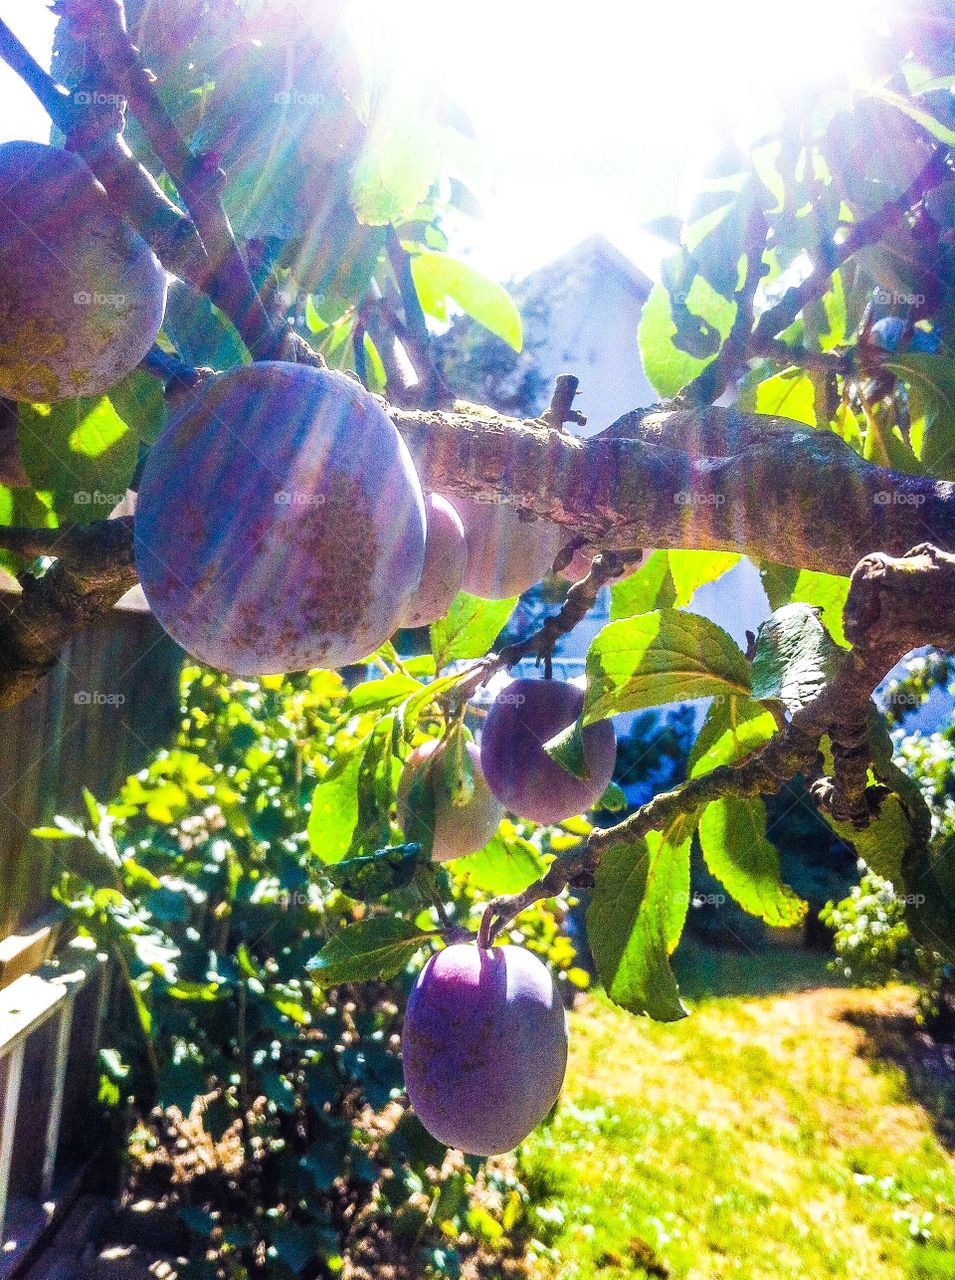 plums in grandma's garden